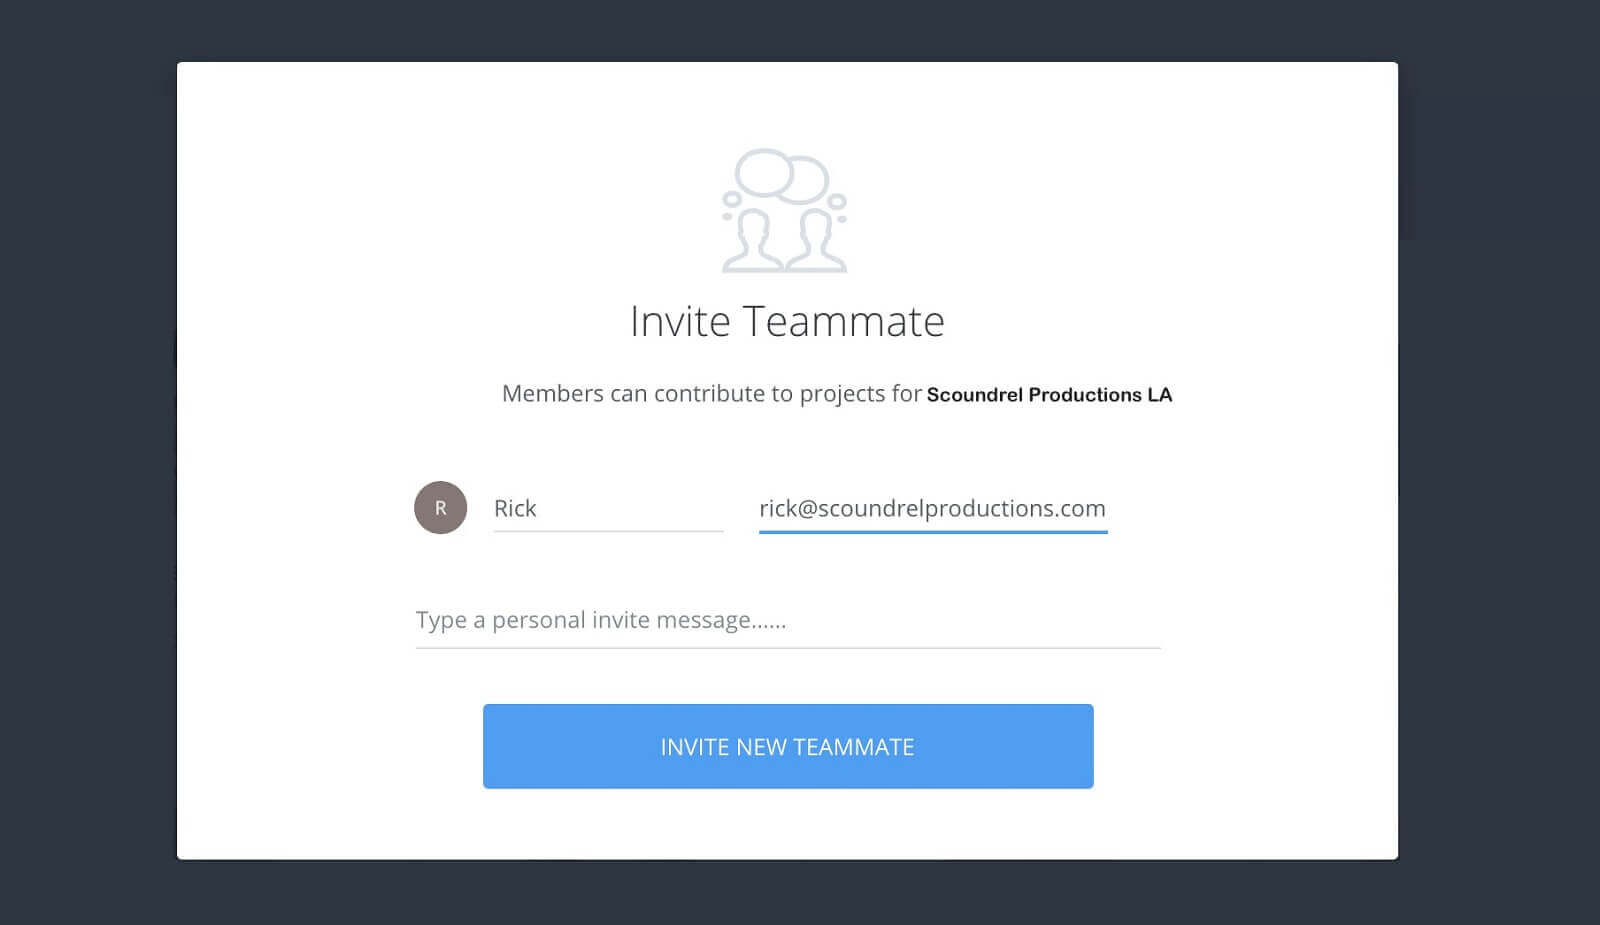 Invite teammate pop-up - Fill in and click invite